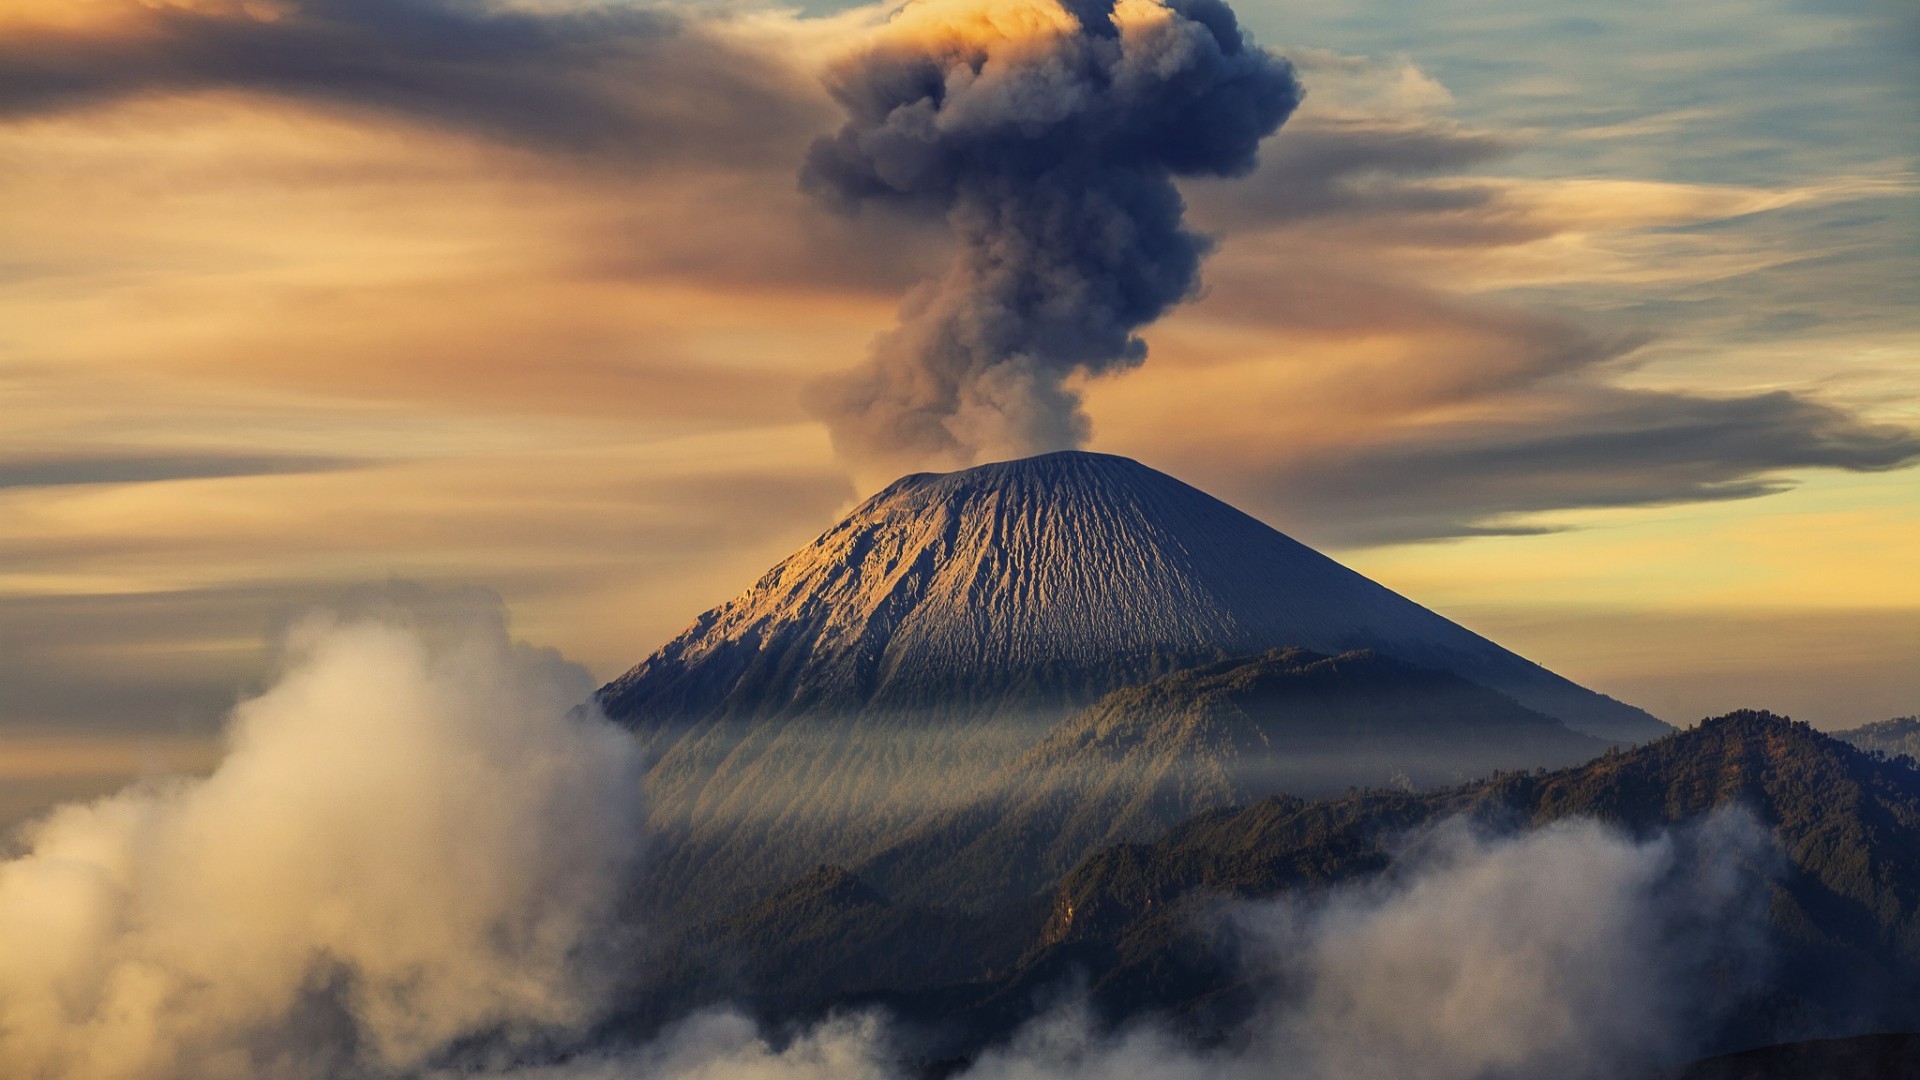 富士山自古以来就被视为神圣的存在,吸引了无数游客前来朝拜和观光